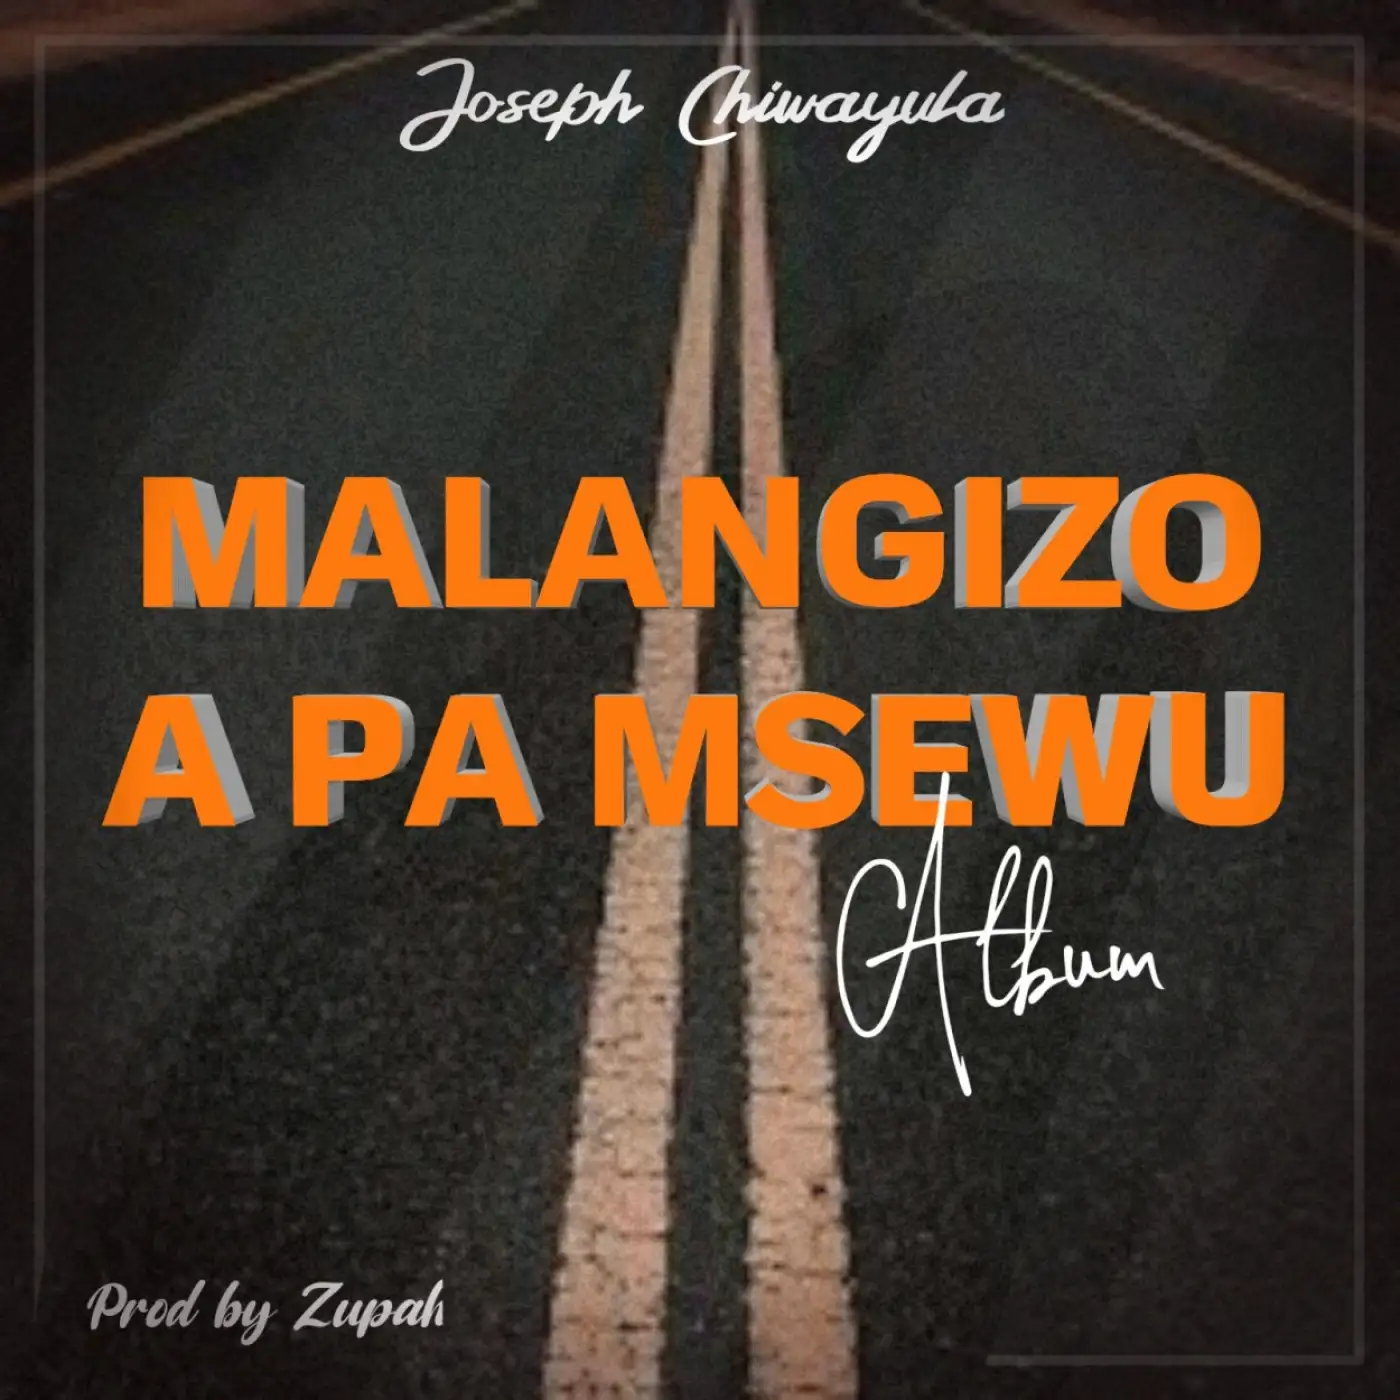 Joseph Chiwayula-Joseph Chiwayula - Manda (Prod. Zupah)-song artwork cover